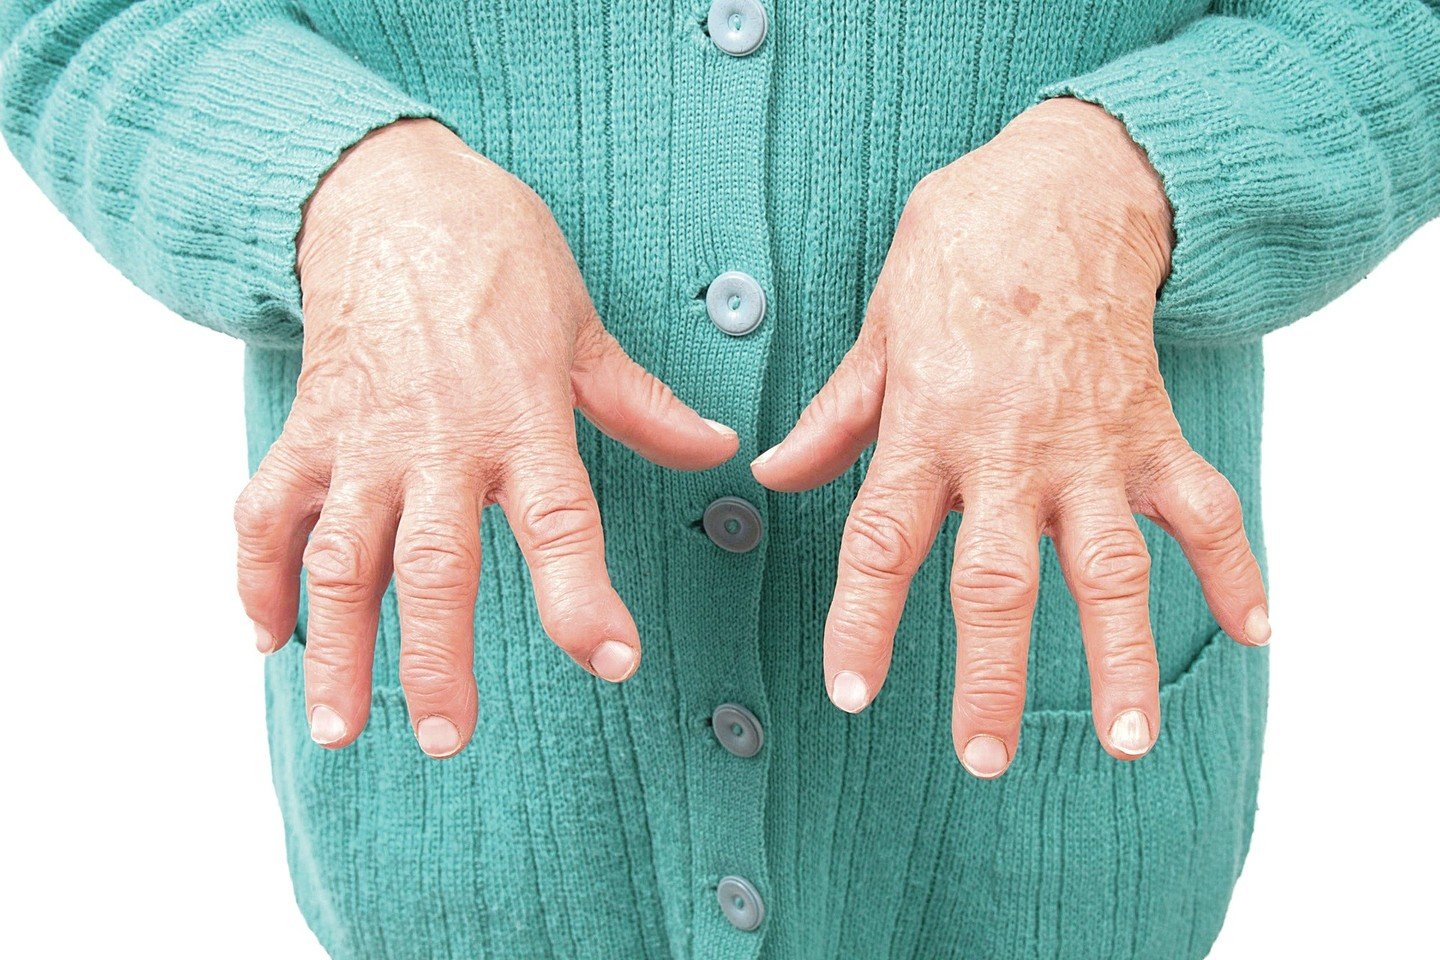 liaudies gynimo artrito rankų vaistai sanariams gydyti